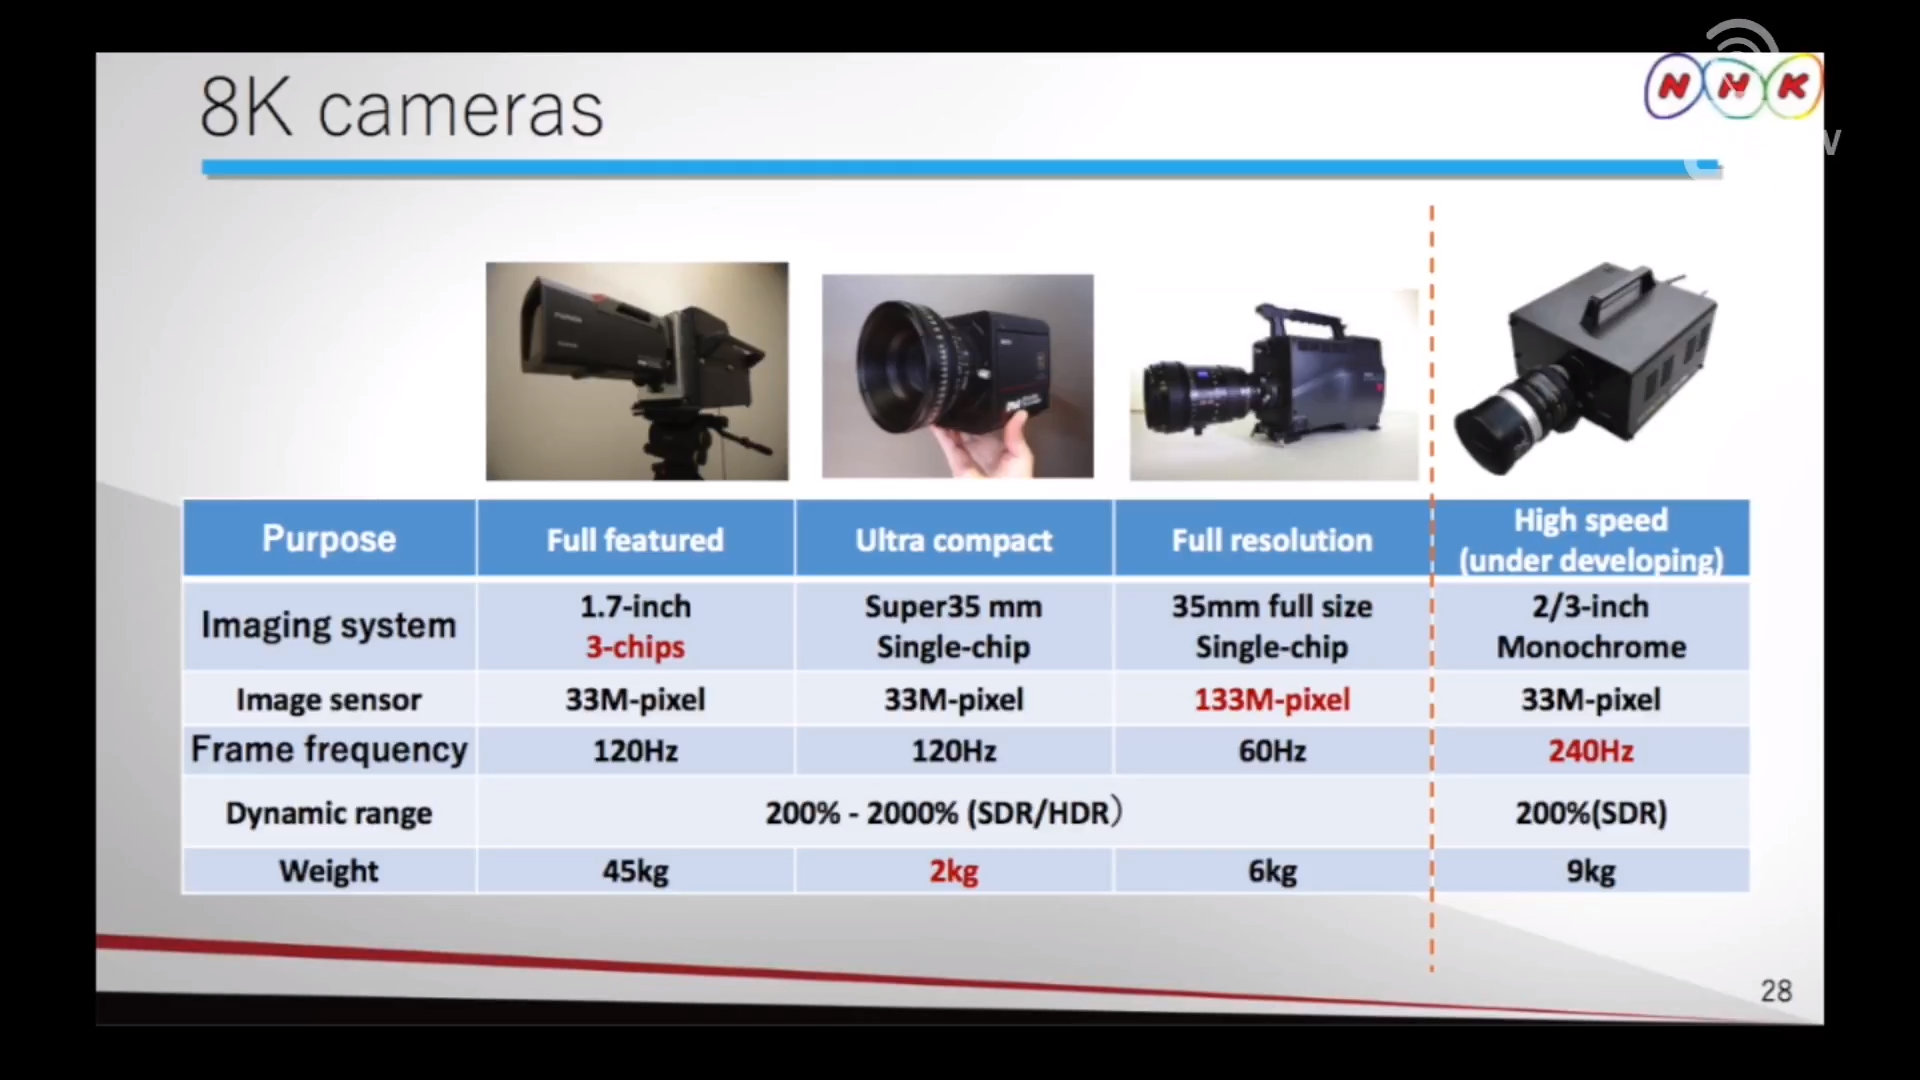 Derzeit von NHK entwickelte 8K-Kameras